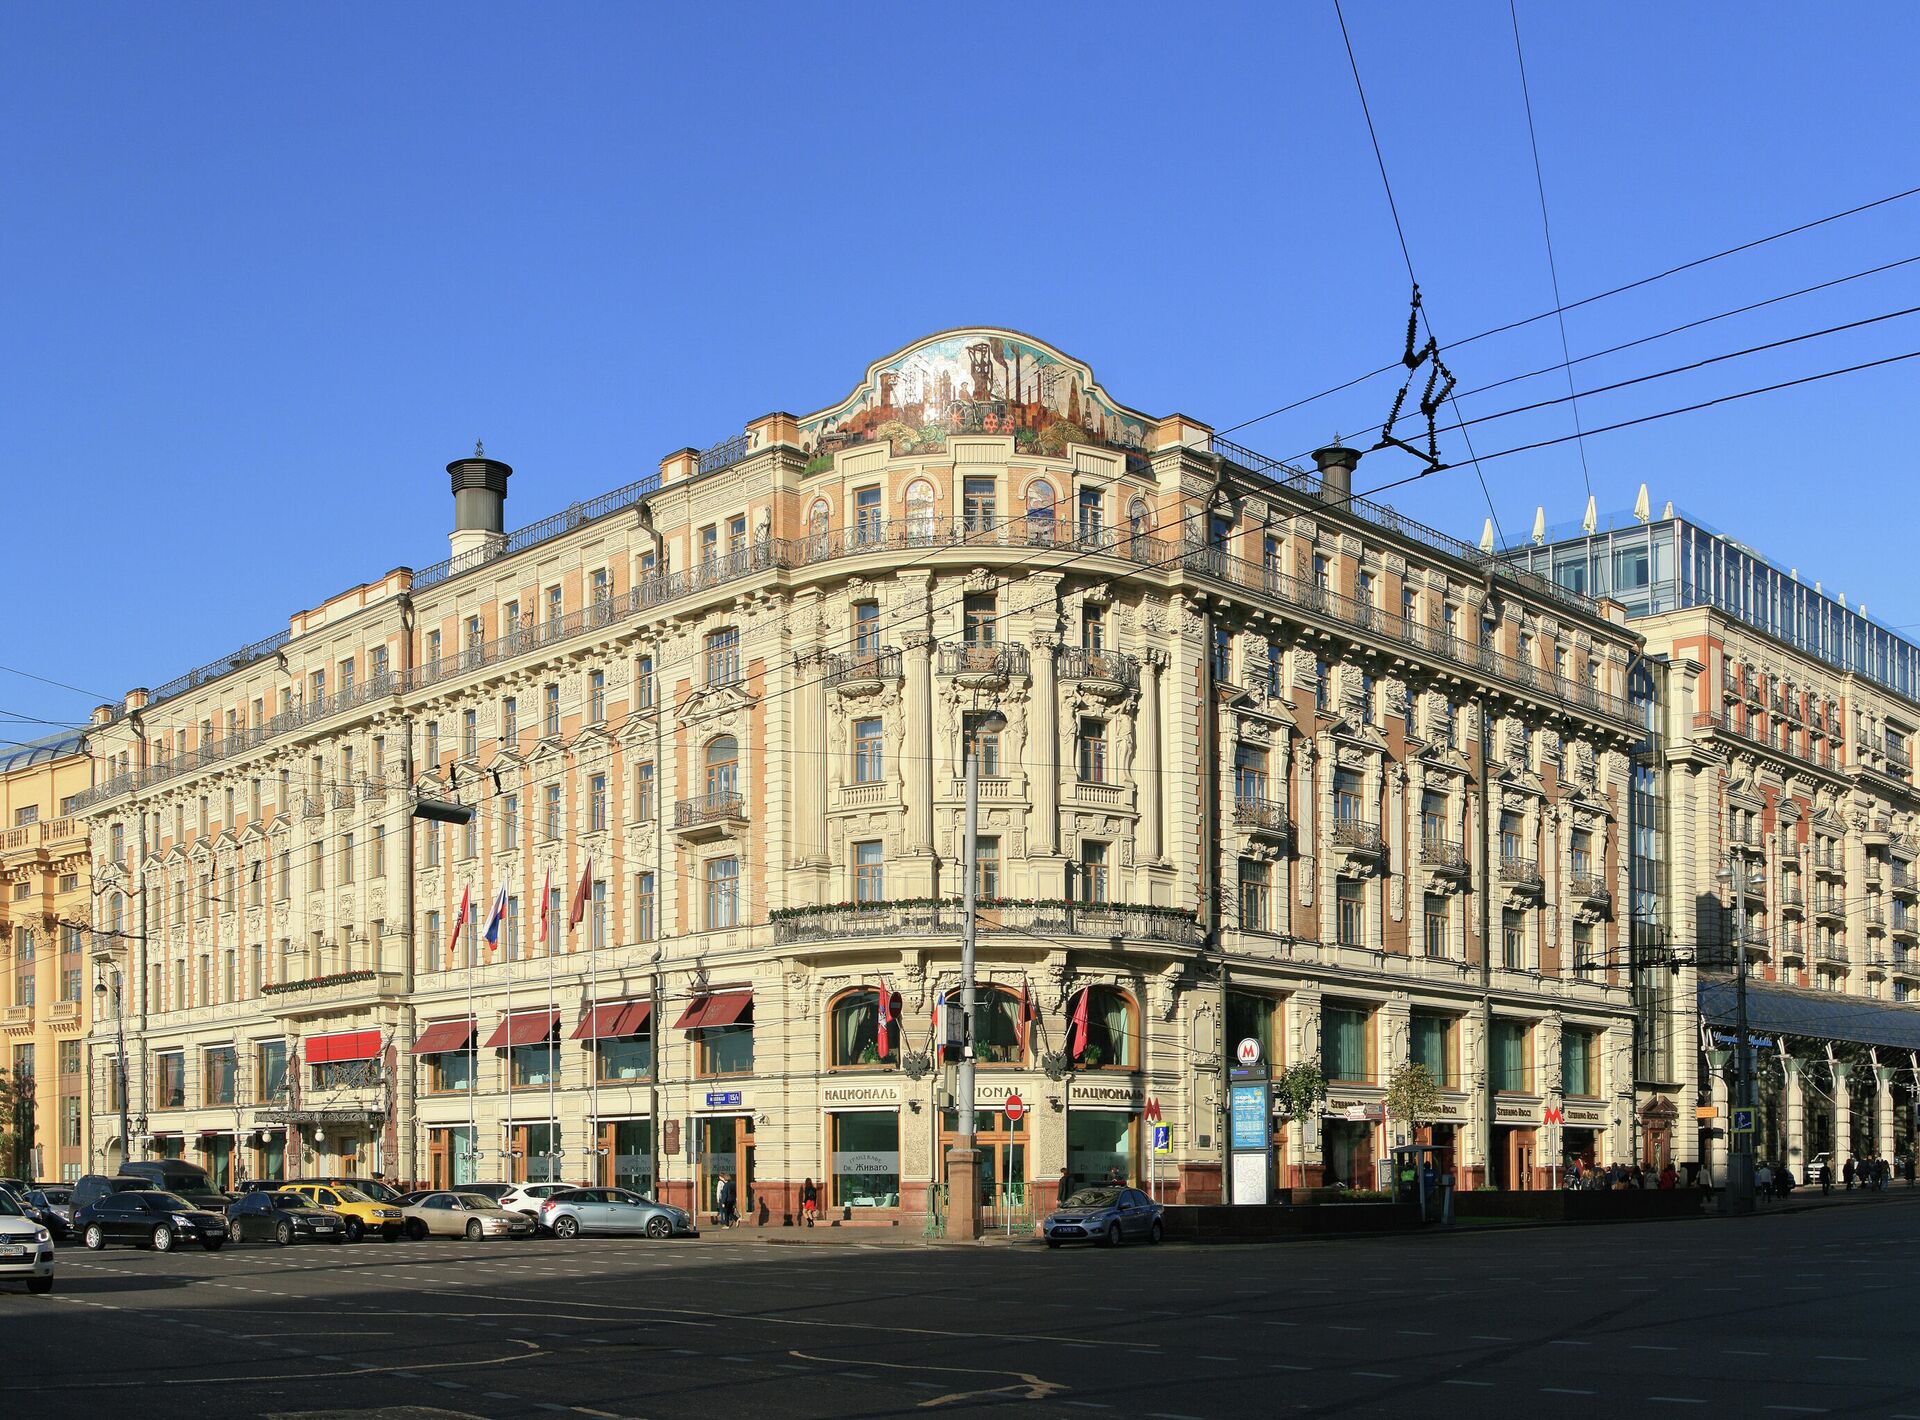 Гостиница Националь, ресторан Белуга находится на втором этаже - РИА Новости, 1920, 19.12.2021